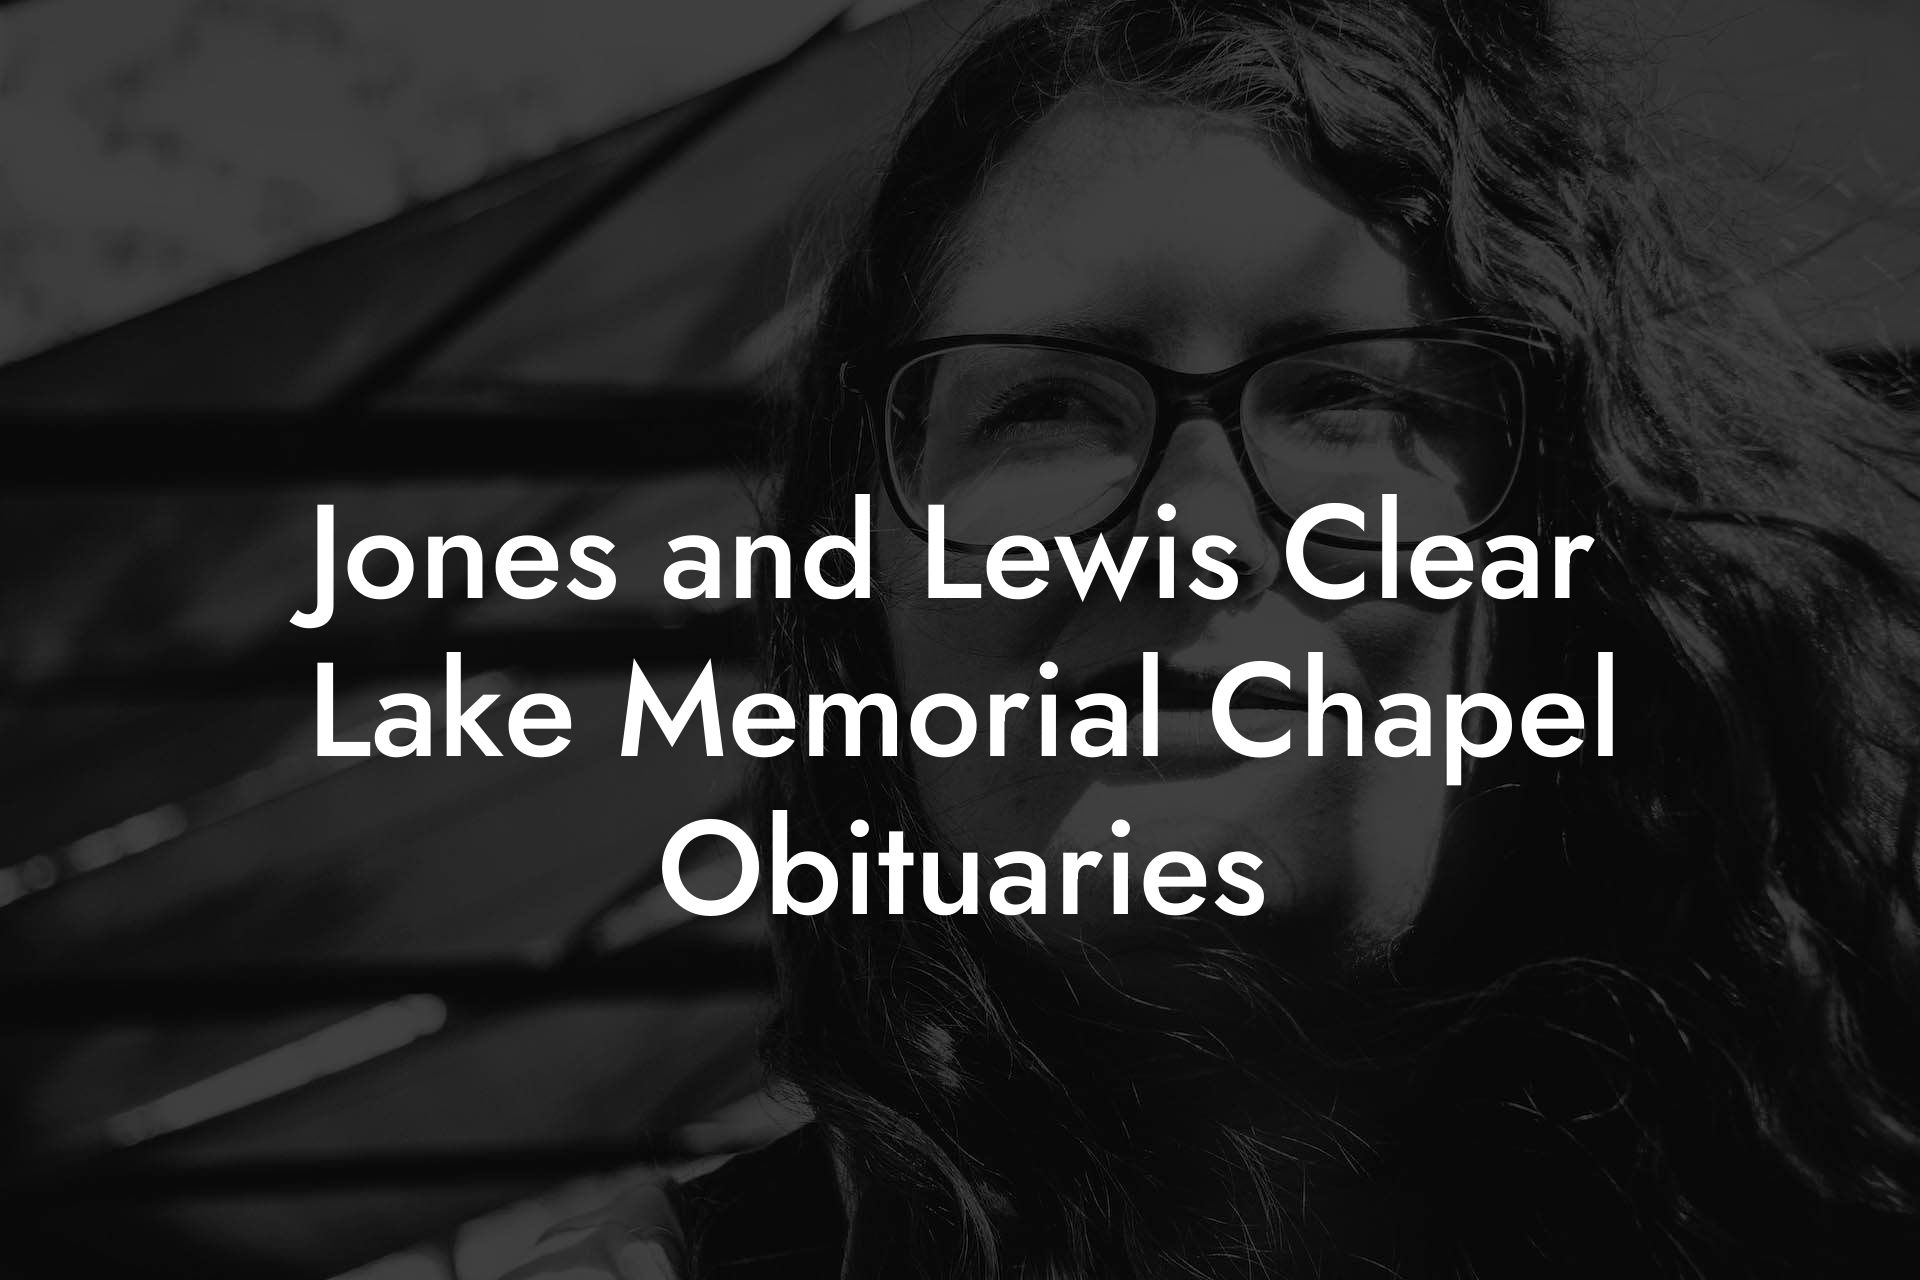 Jones and Lewis Clear Lake Memorial Chapel Obituaries